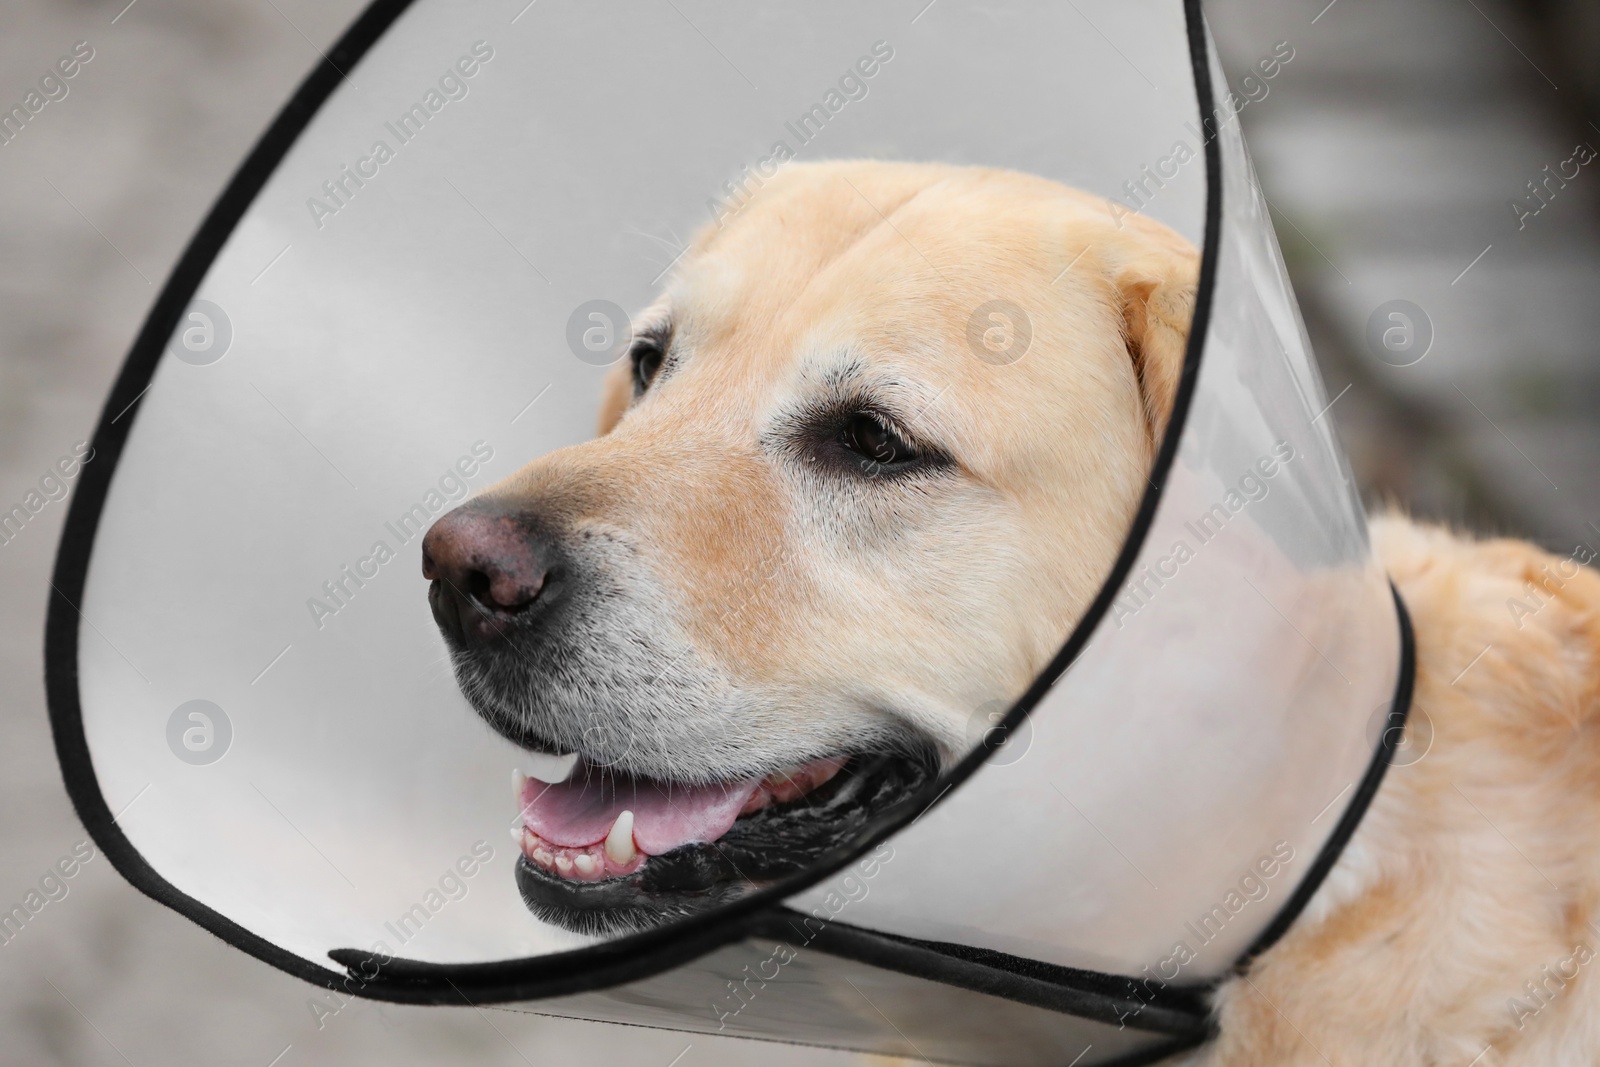 Photo of Adorable Labrador Retriever dog wearing Elizabethan collar outdoors, closeup